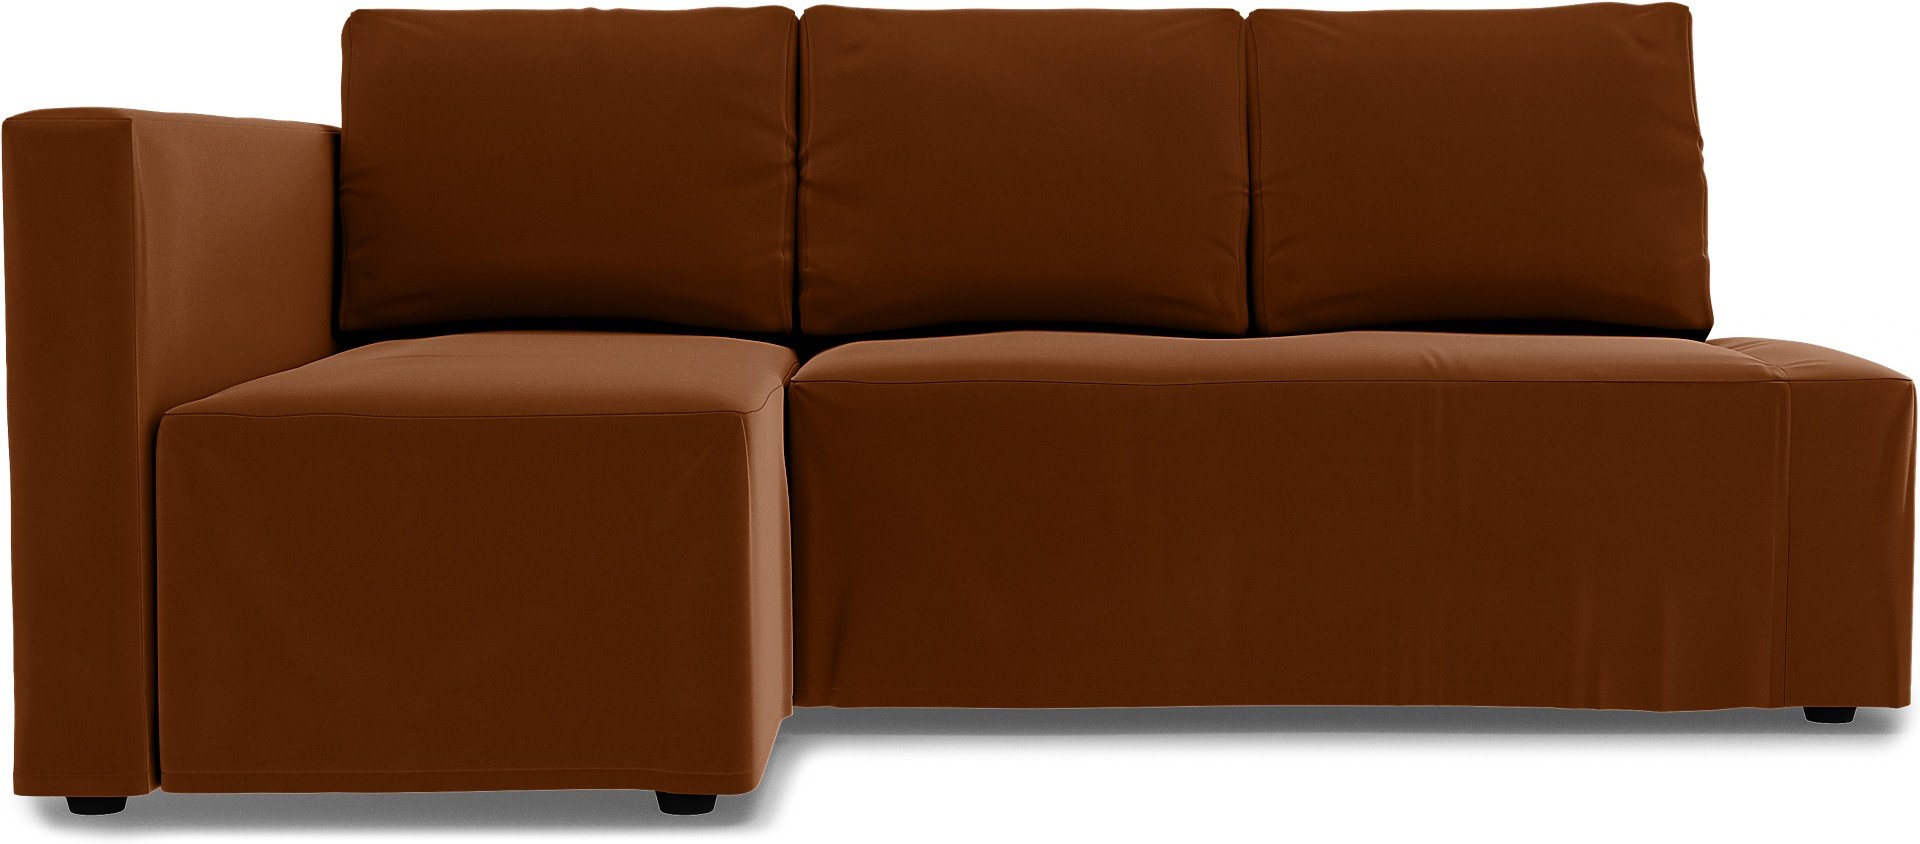 IKEA - Friheten Sofa Bed with Left Chaise Cover, Cinnamon, Velvet - Bemz